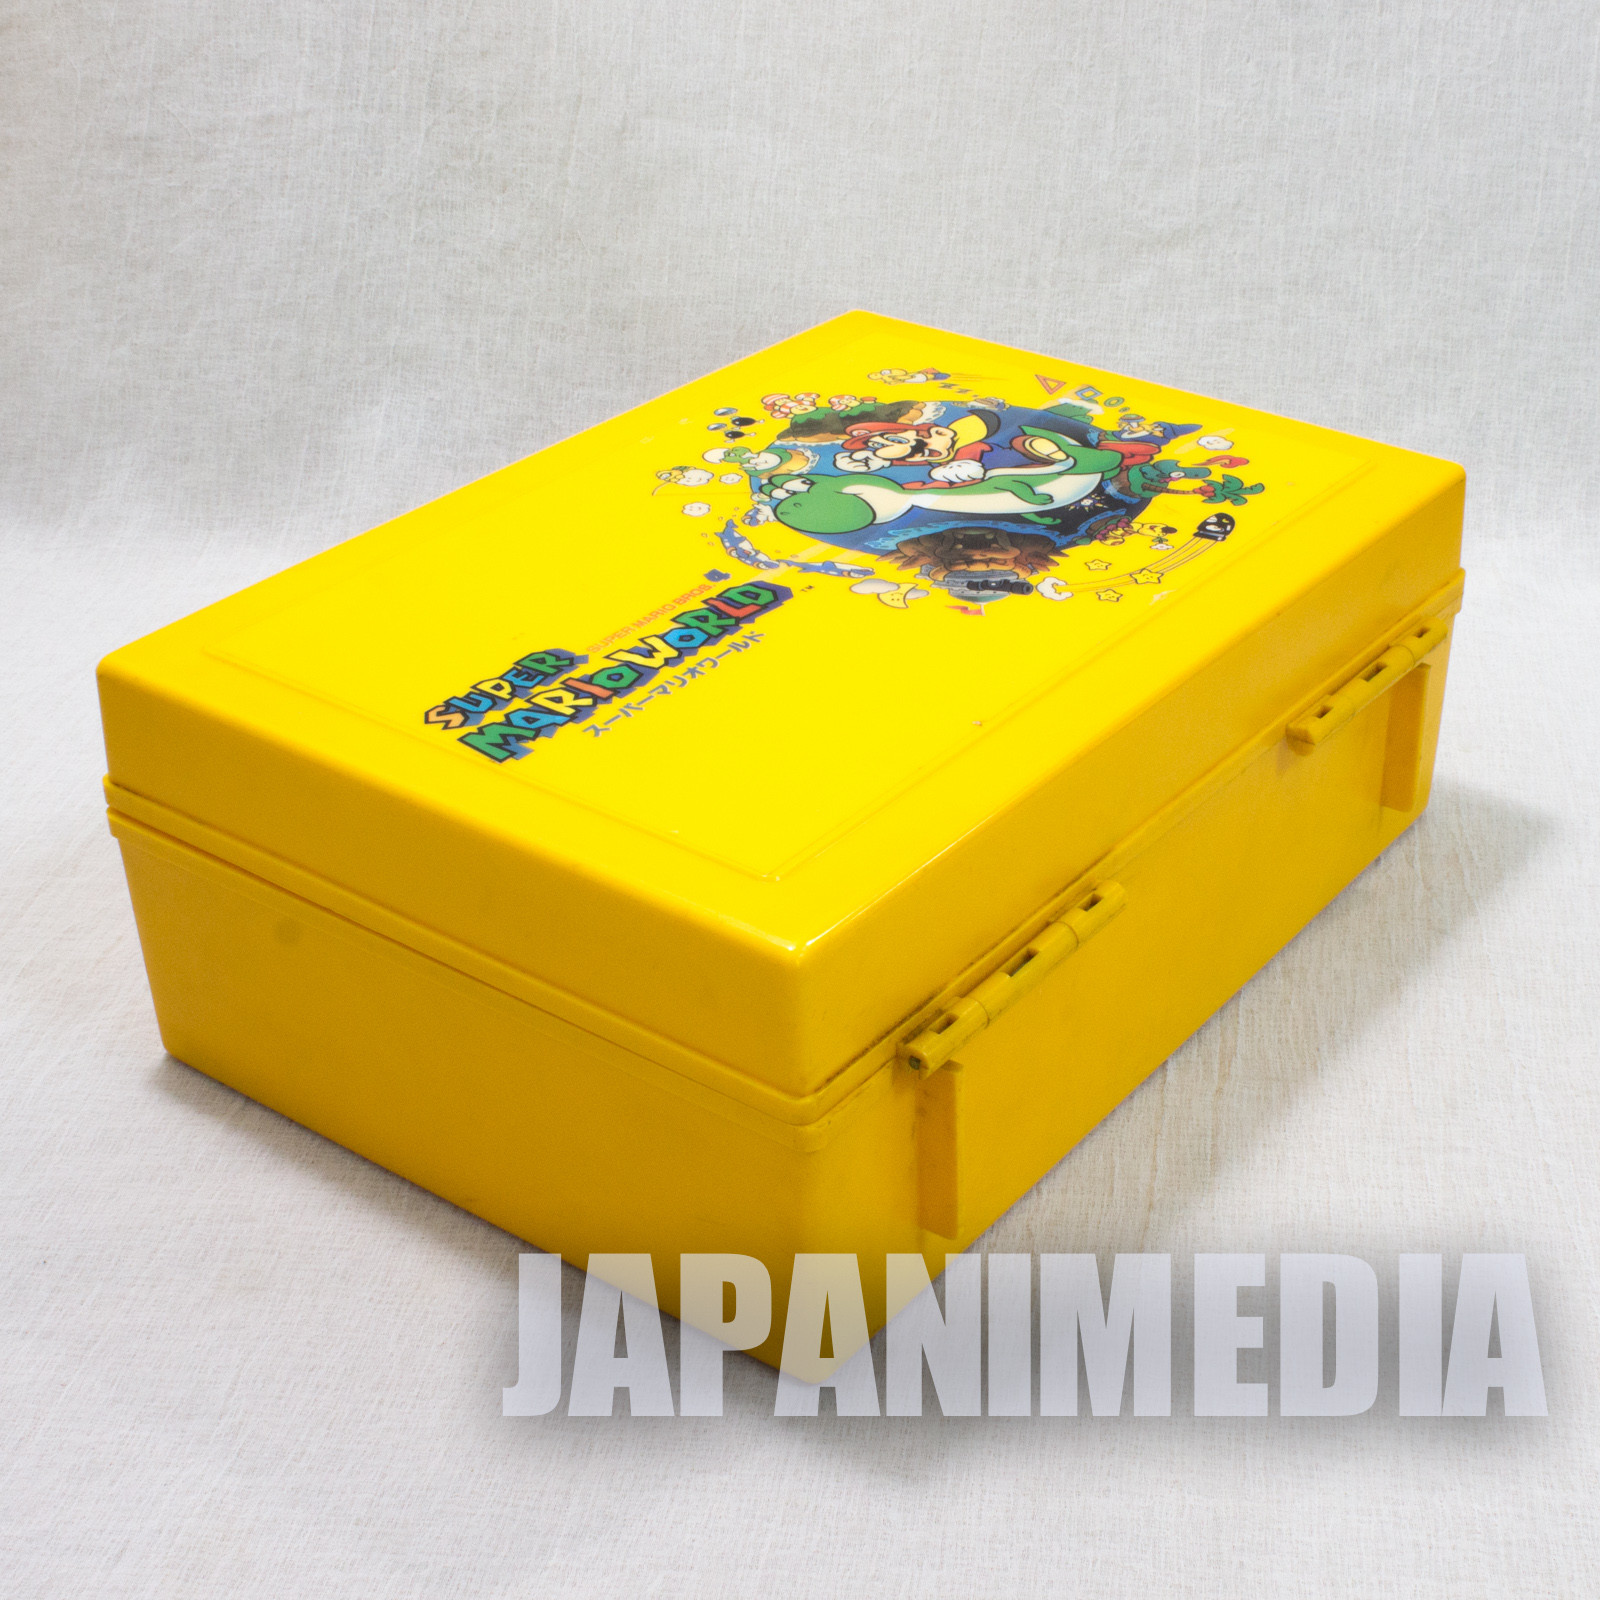 Retro RARE! Super Mario Bros. World Plastic Case JAPAN GAME NINTNEDO SNES